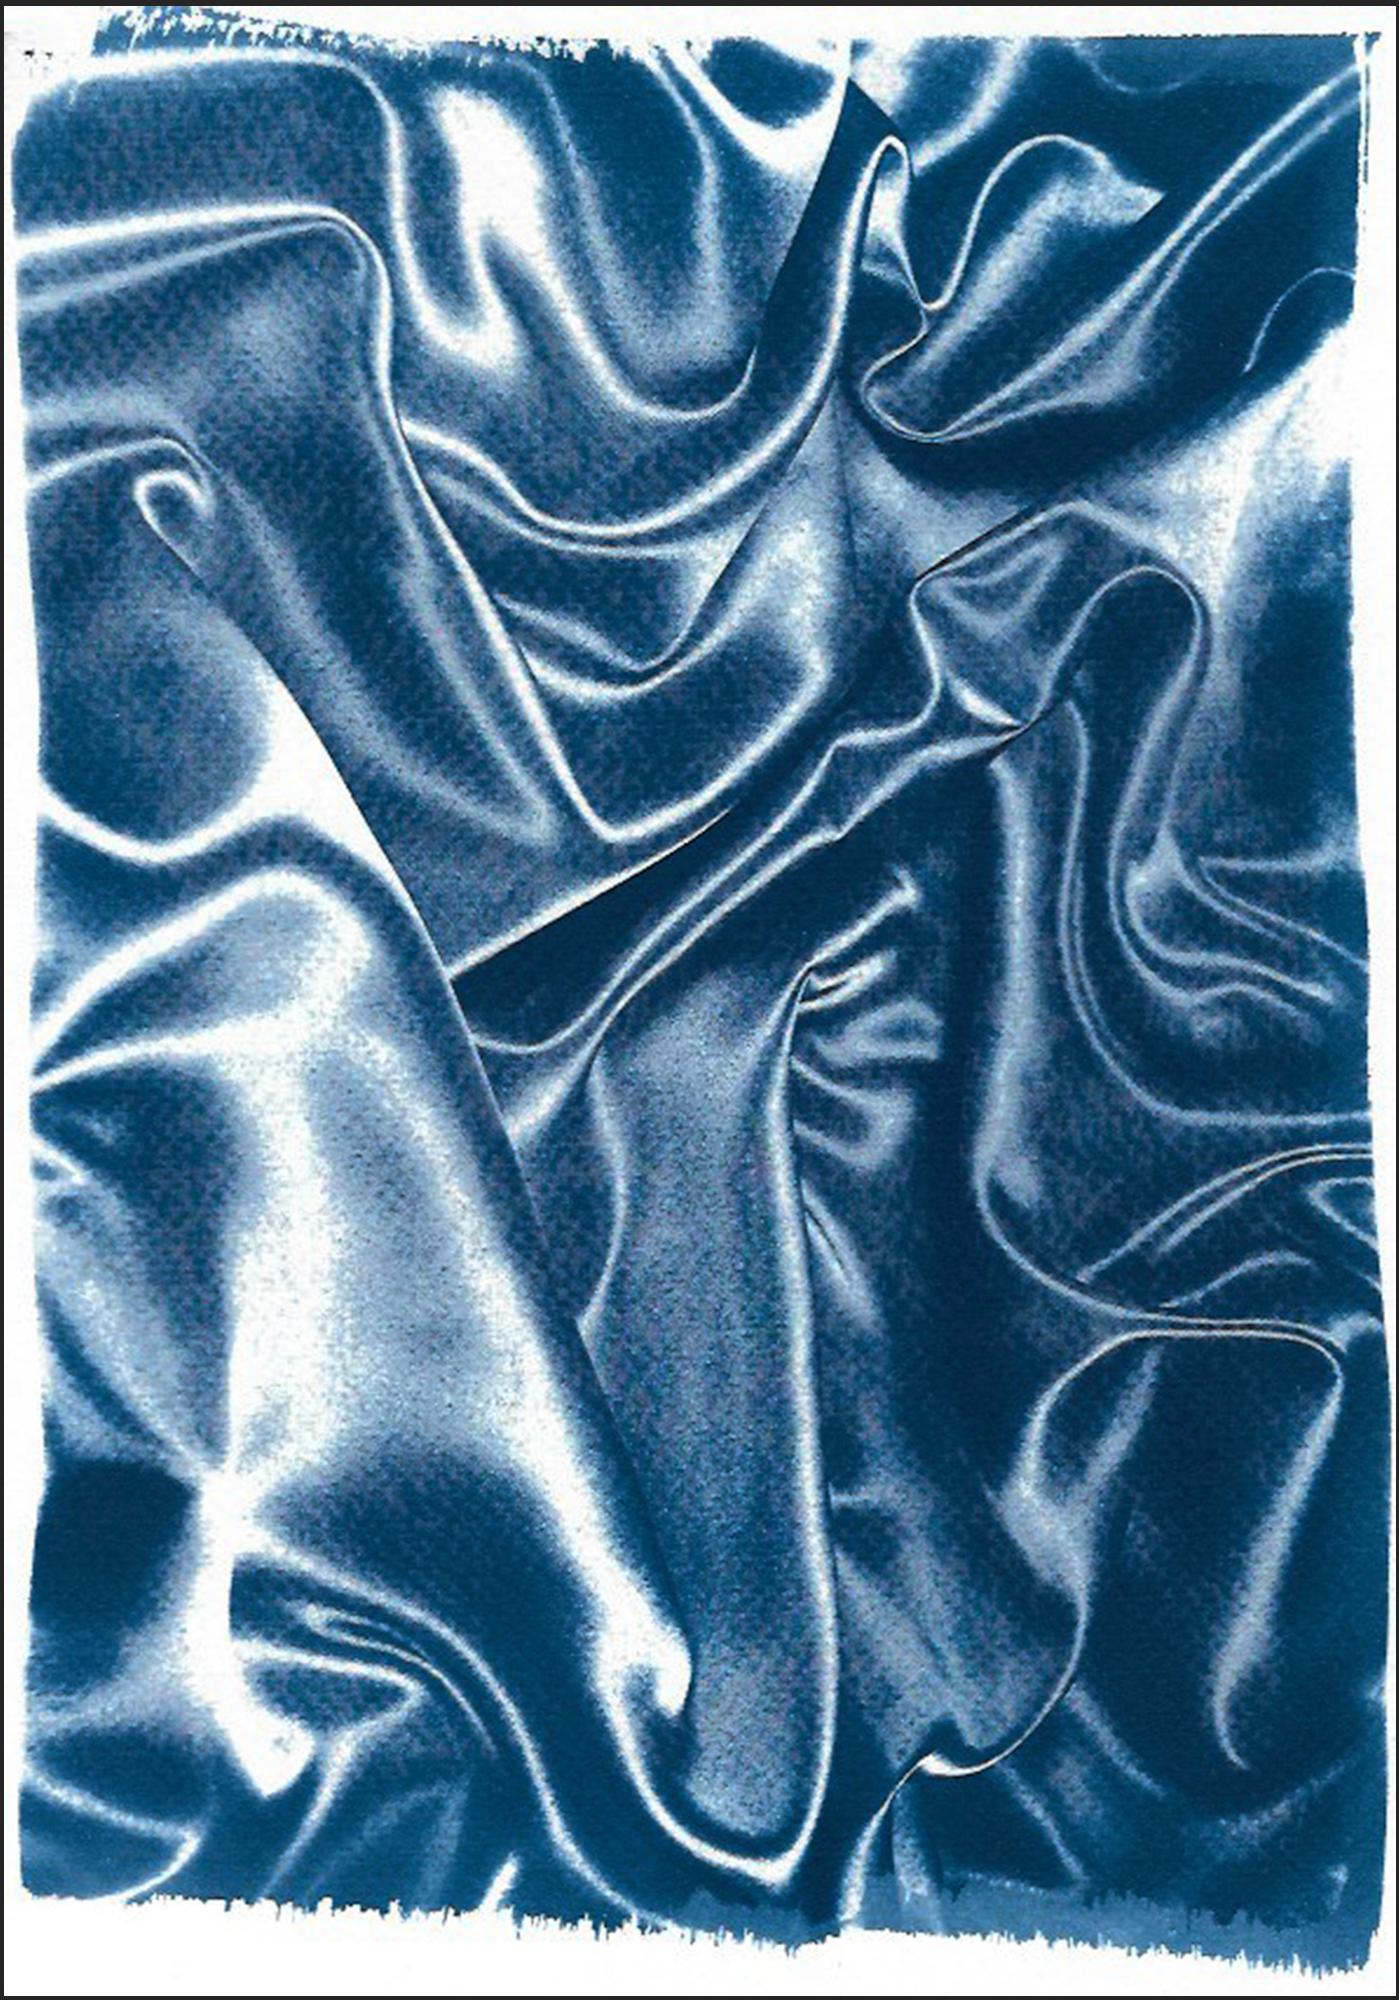 Abstract Painting Kind of Cyan - Mouvement classique de la soie bleue, gestes abstraits en tissu, cyanotype contemporain 